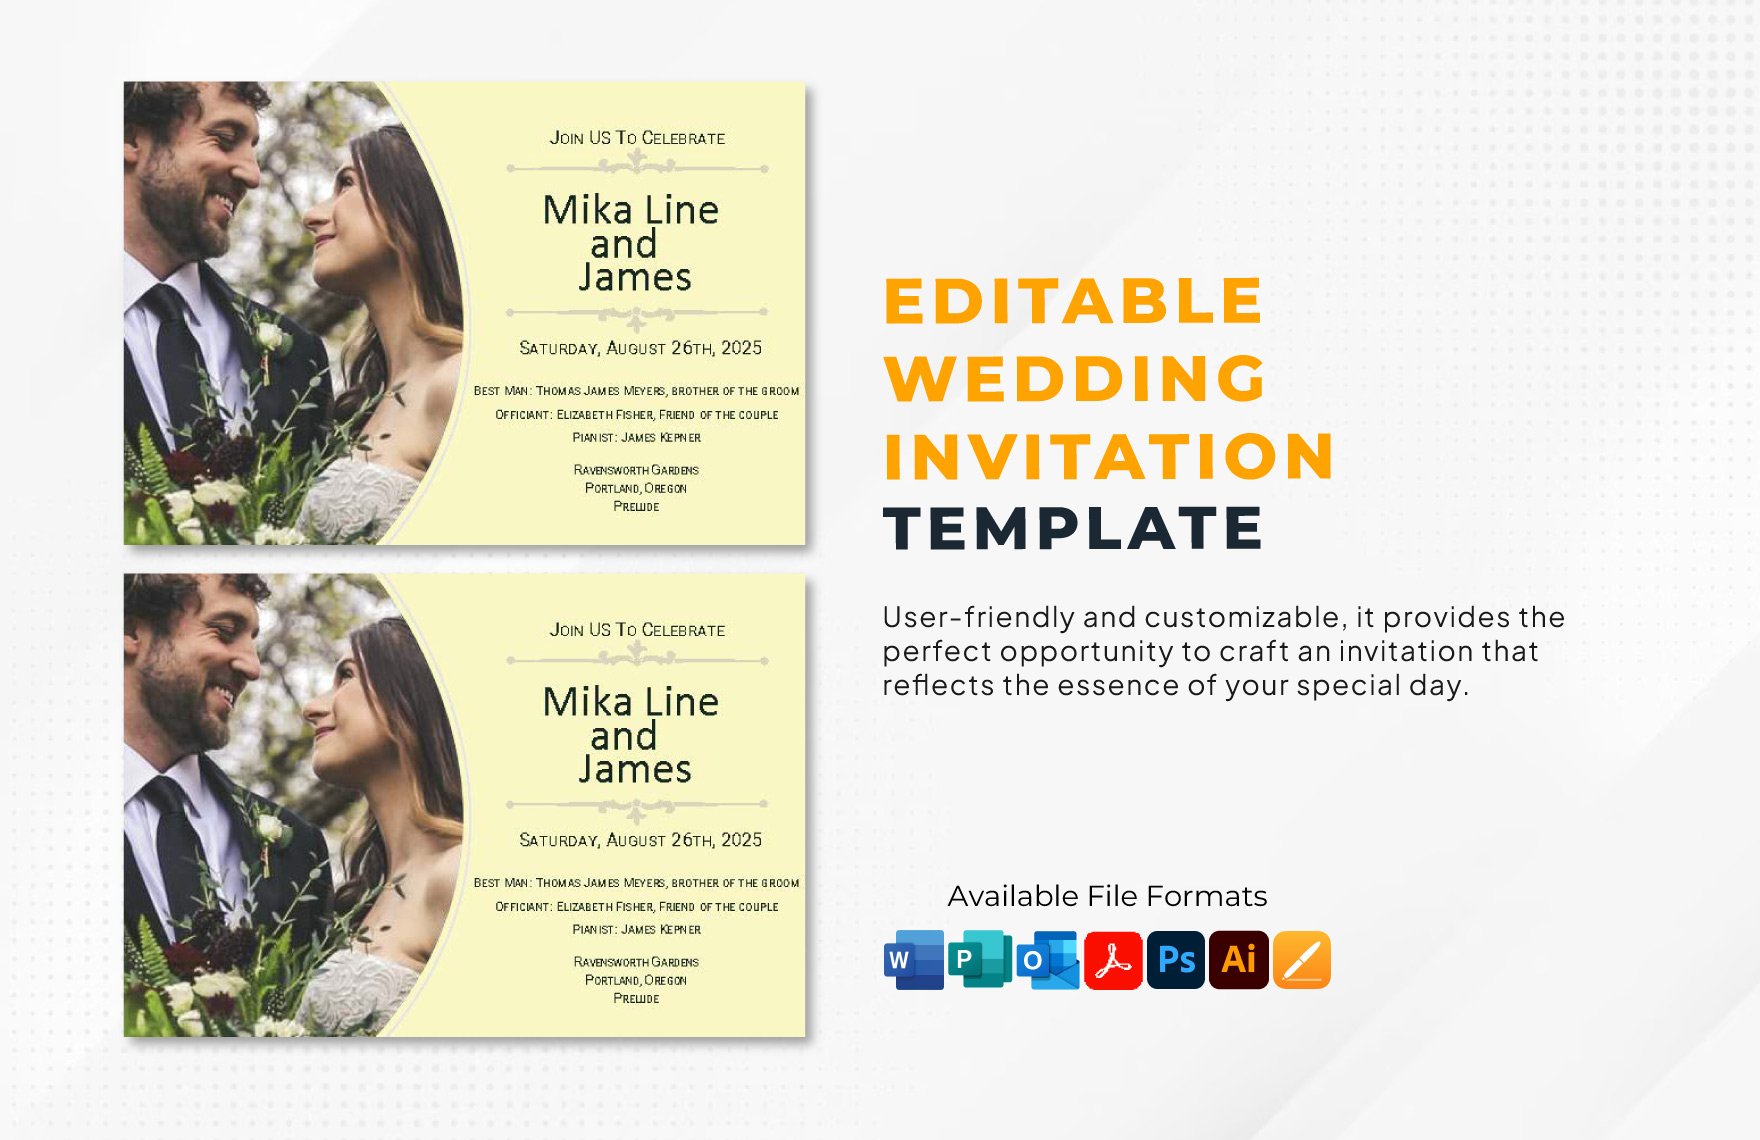 Editable Wedding Invitation Template